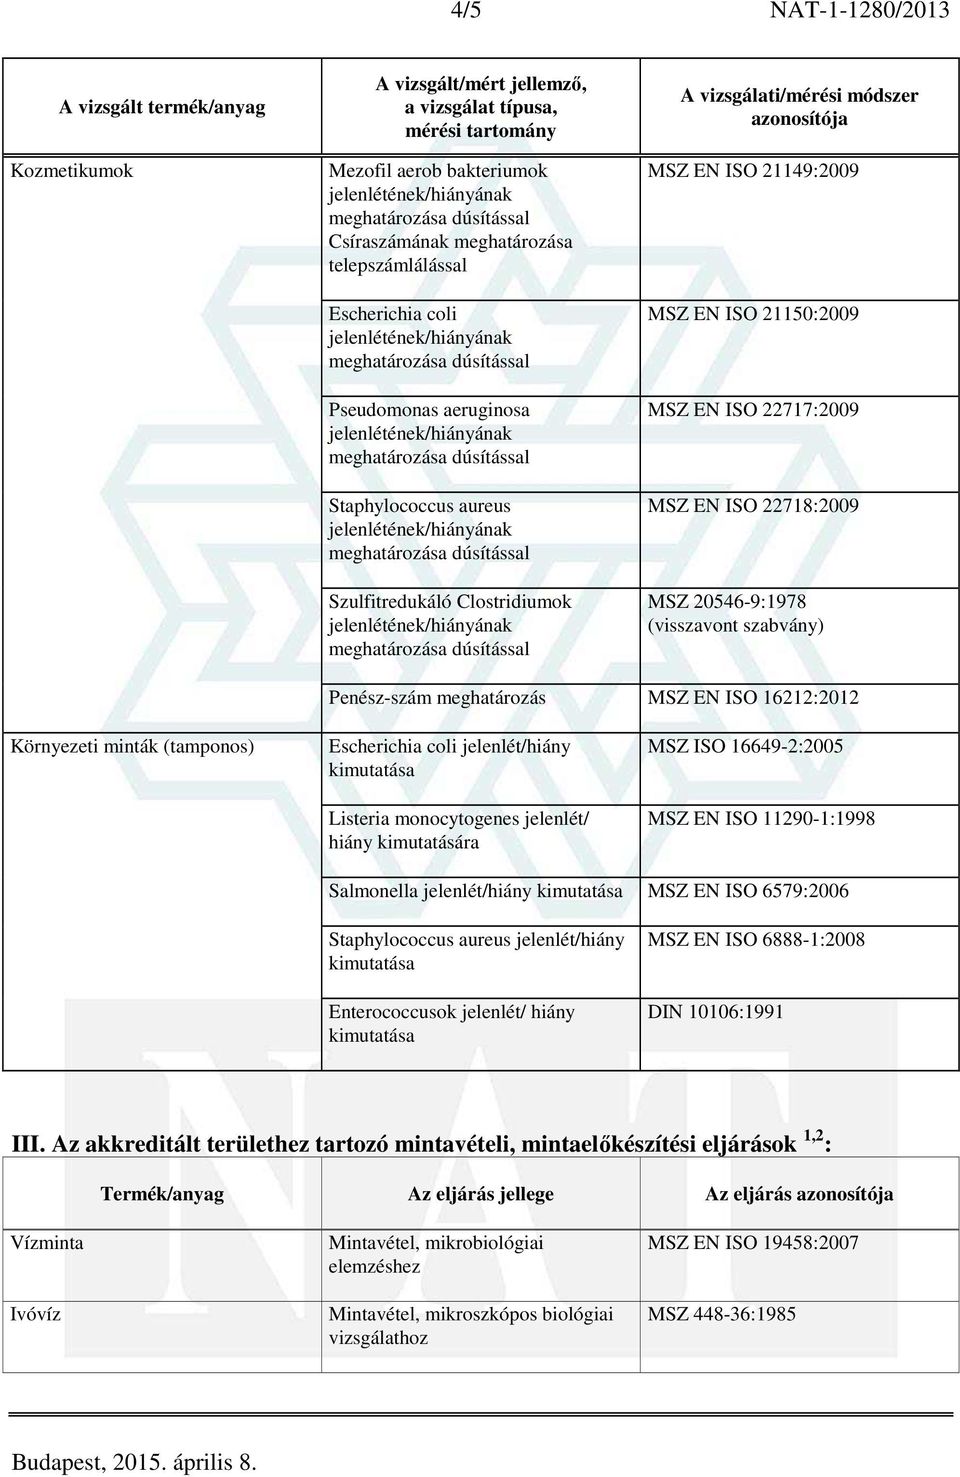 jelenlét/hiány Listeria monocytogenes jelenlét/ hiány kimutatására MSZ ISO 16649-2:2005 MSZ EN ISO 11290-1:1998 Salmonella jelenlét/hiány MSZ EN ISO 6579:2006 Staphylococcus aureus jelenlét/hiány